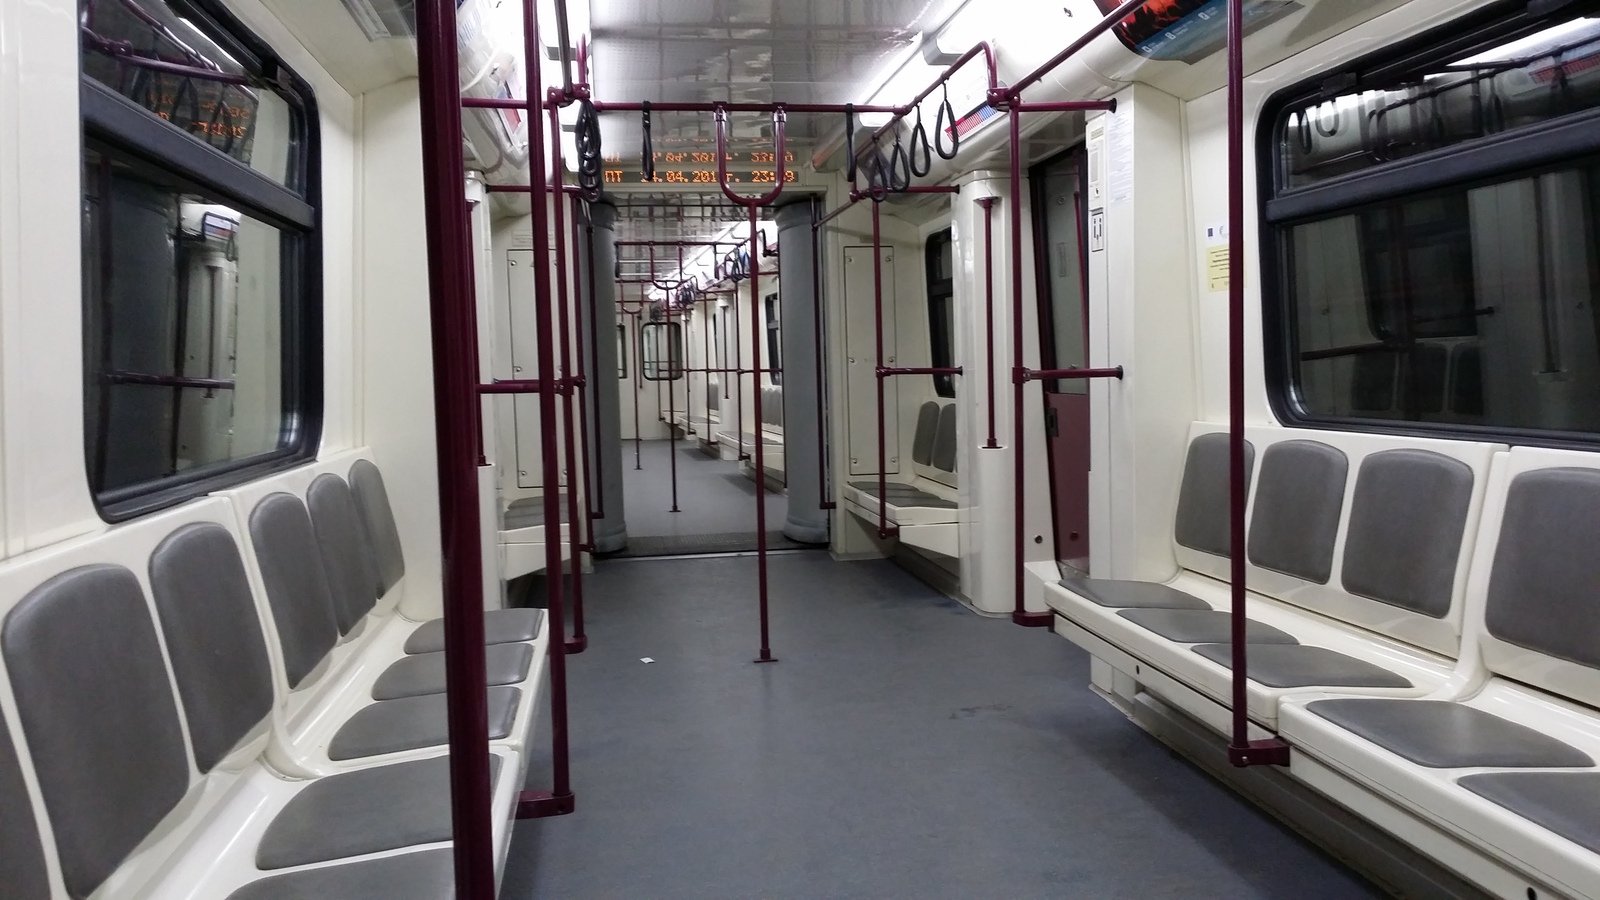 inside of an empty passenger train car